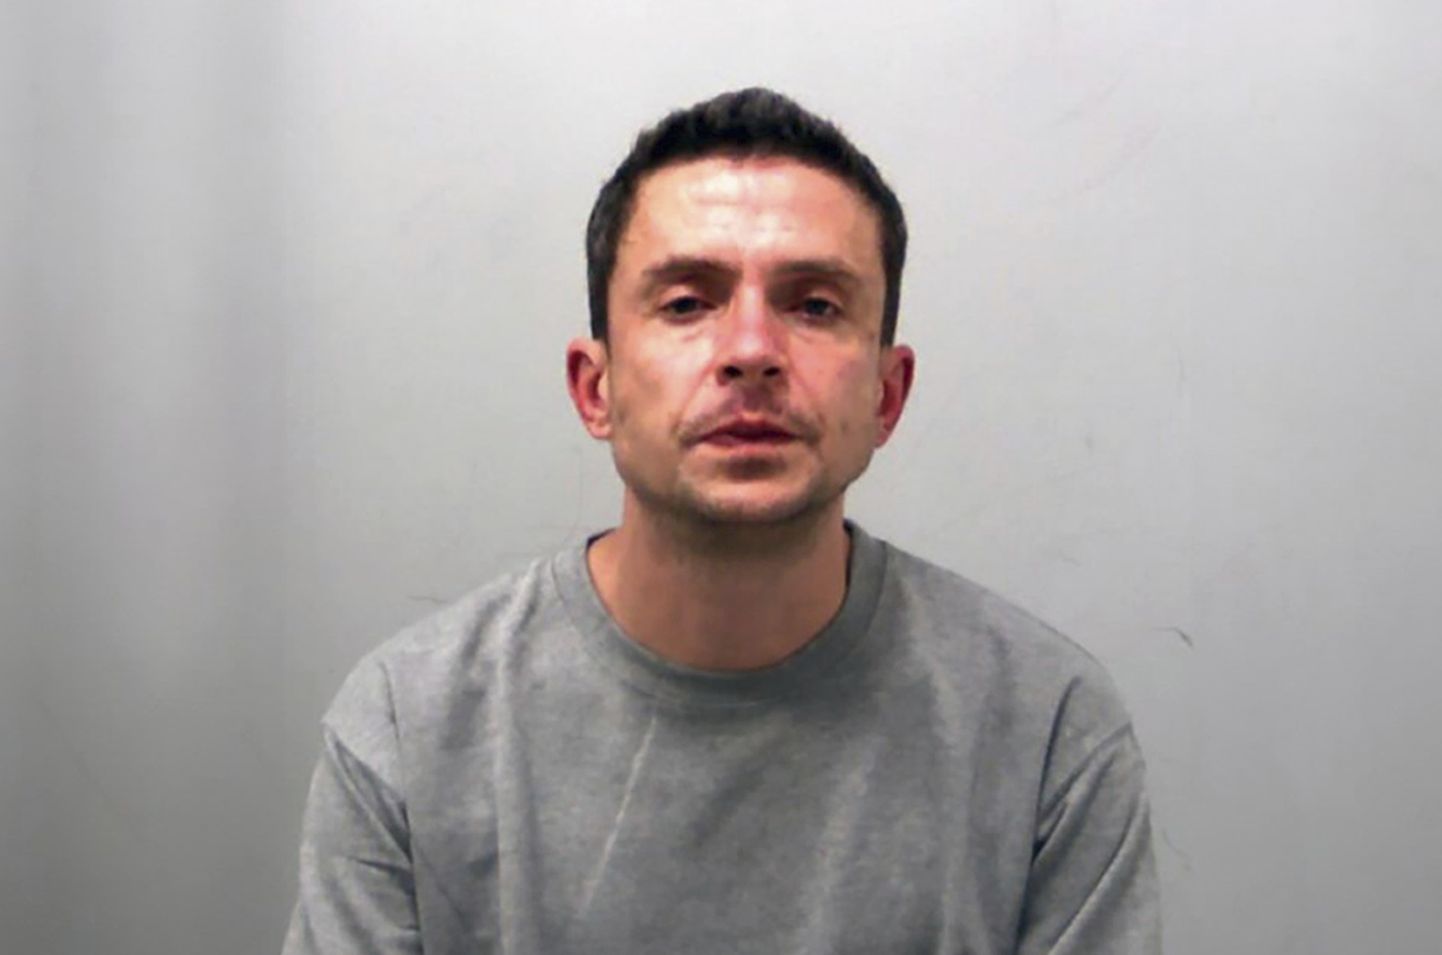 Briti Essexi politsei avaldatud foto 39-aastasest seksuaalkurjategijast Nicholas Hawkesist, kes saatis 15-aastasele tüdrukule oma peenisest foto ja kes sai selle eest rohkem kui 15 kuu pikkuse vanglakaristuse.